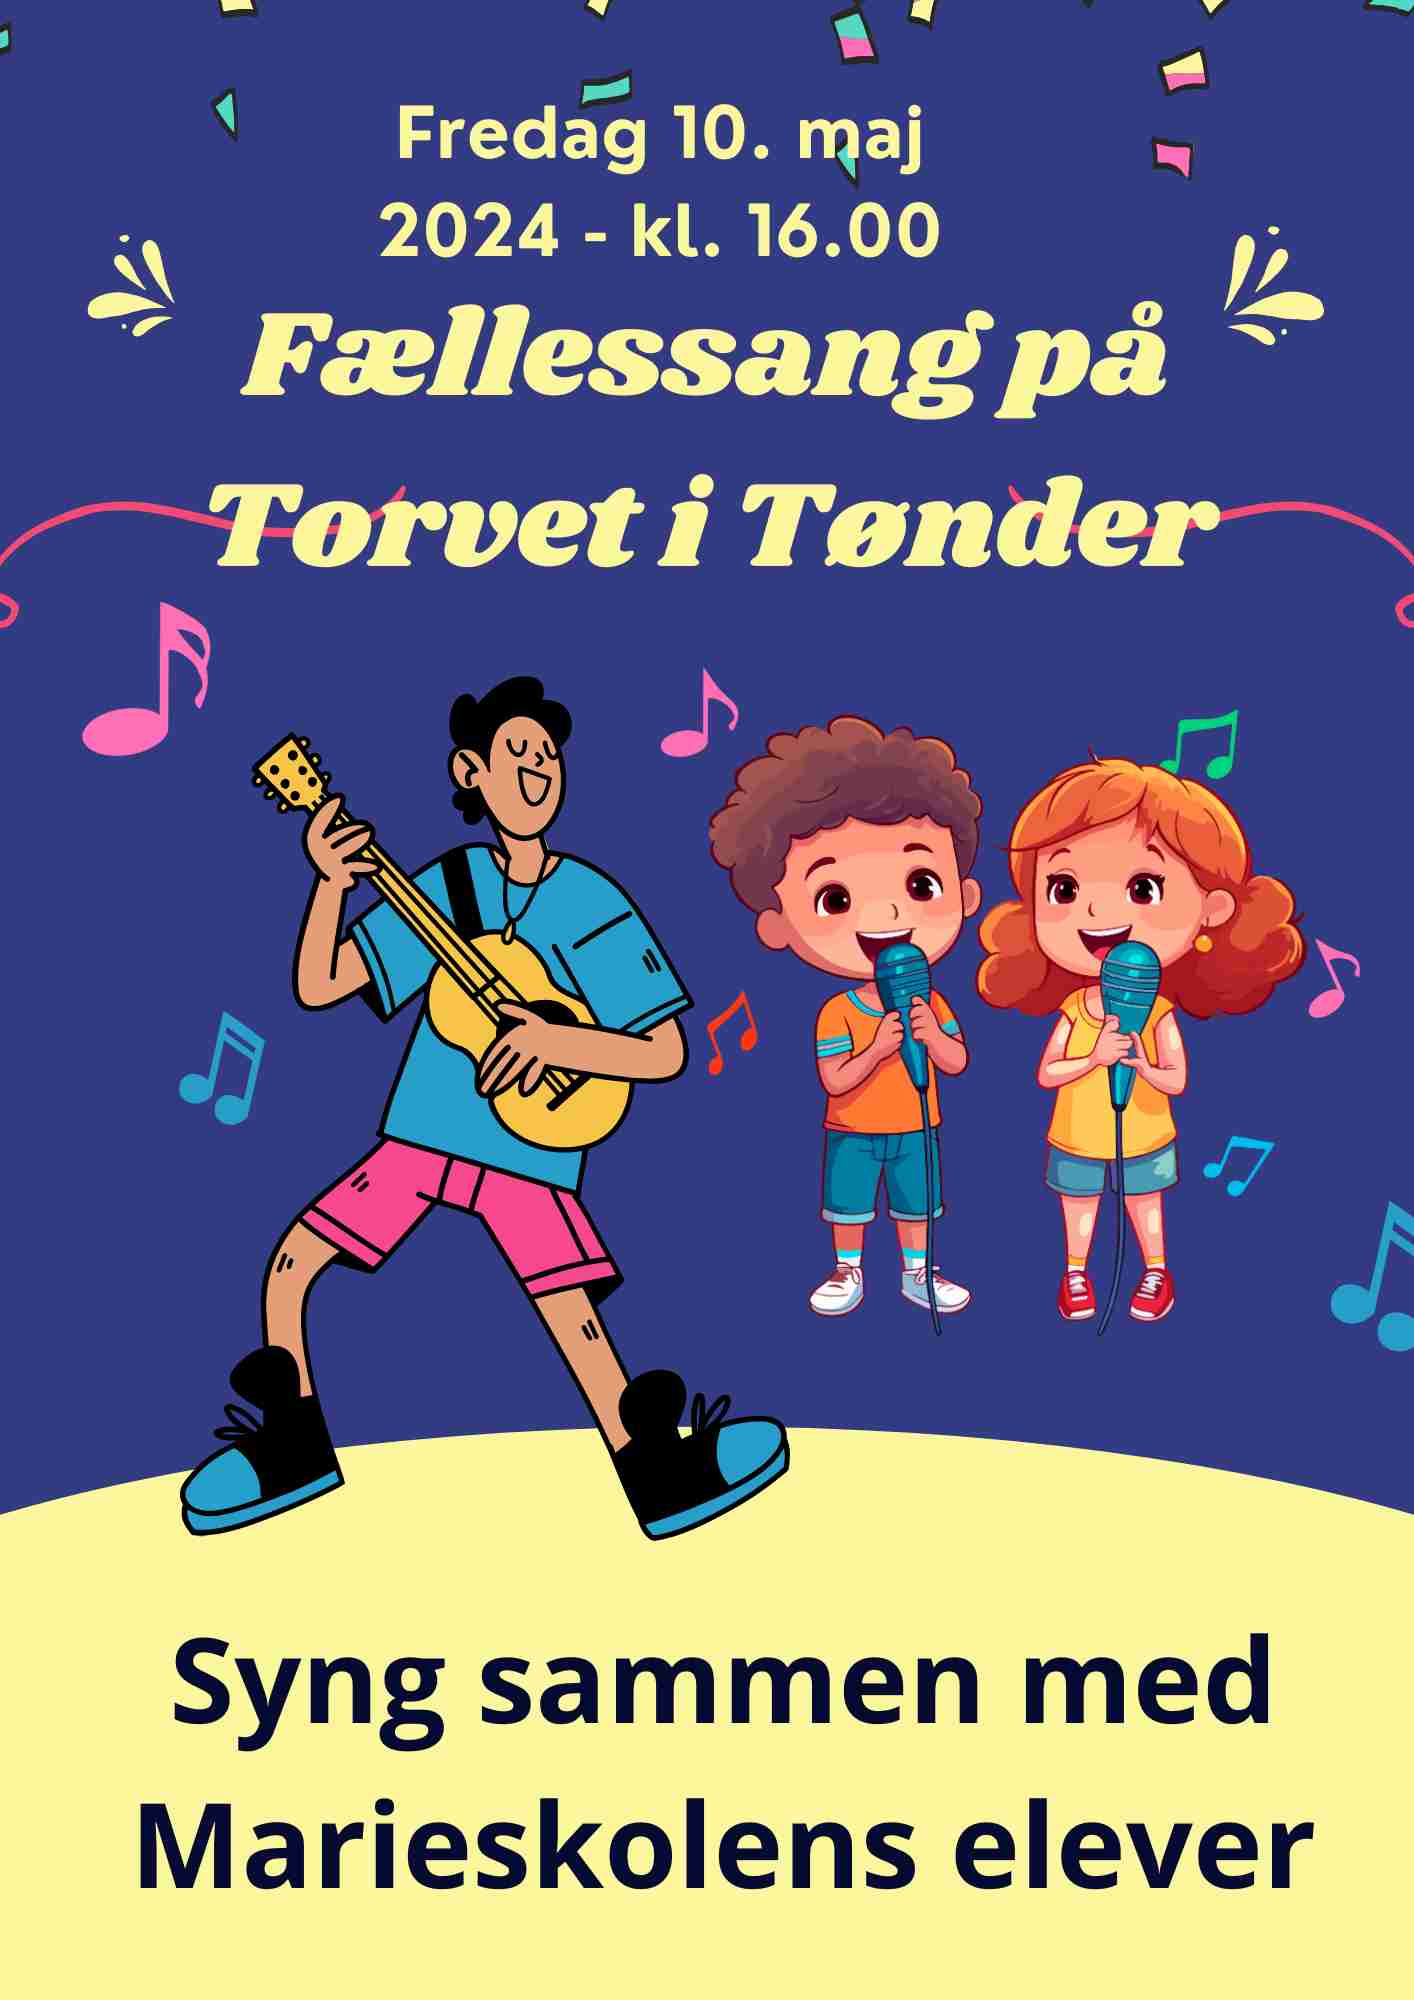 Fællessang på Torvet i Tønder